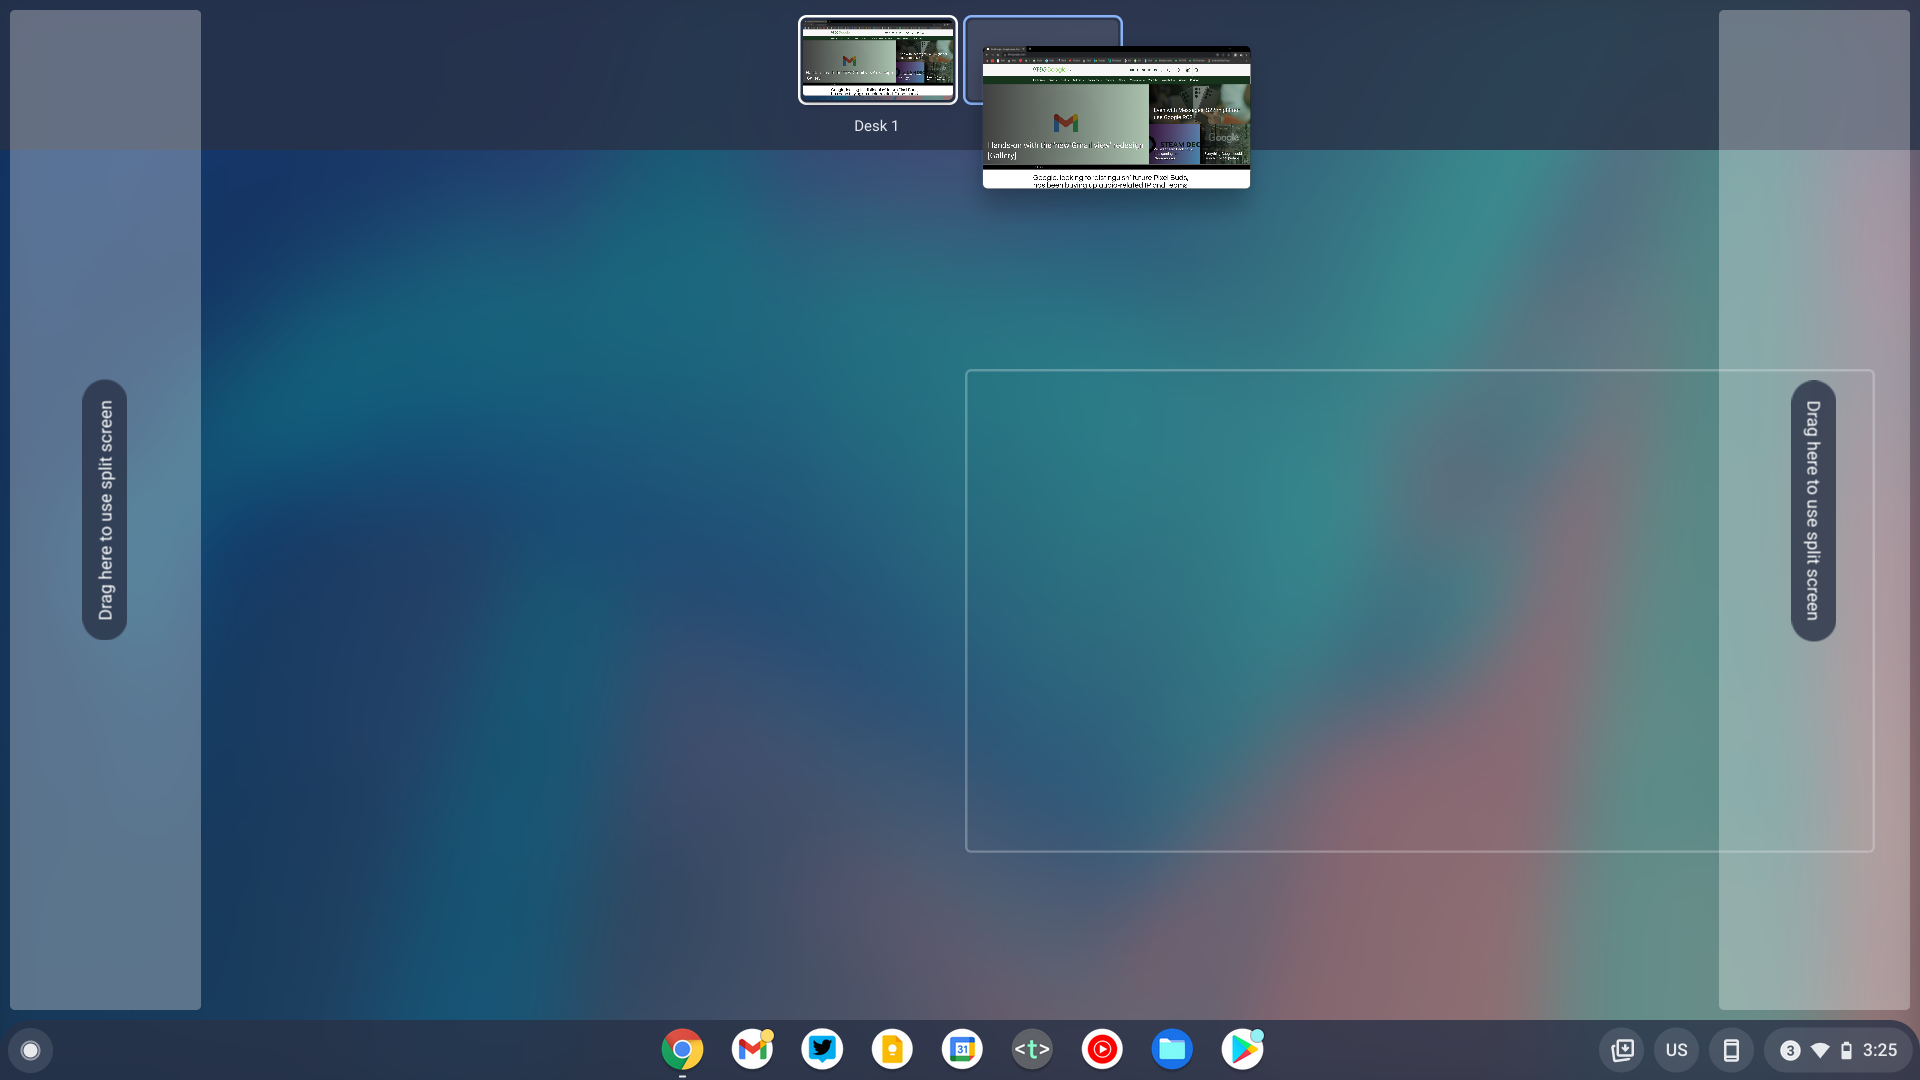 Chrome OS 99